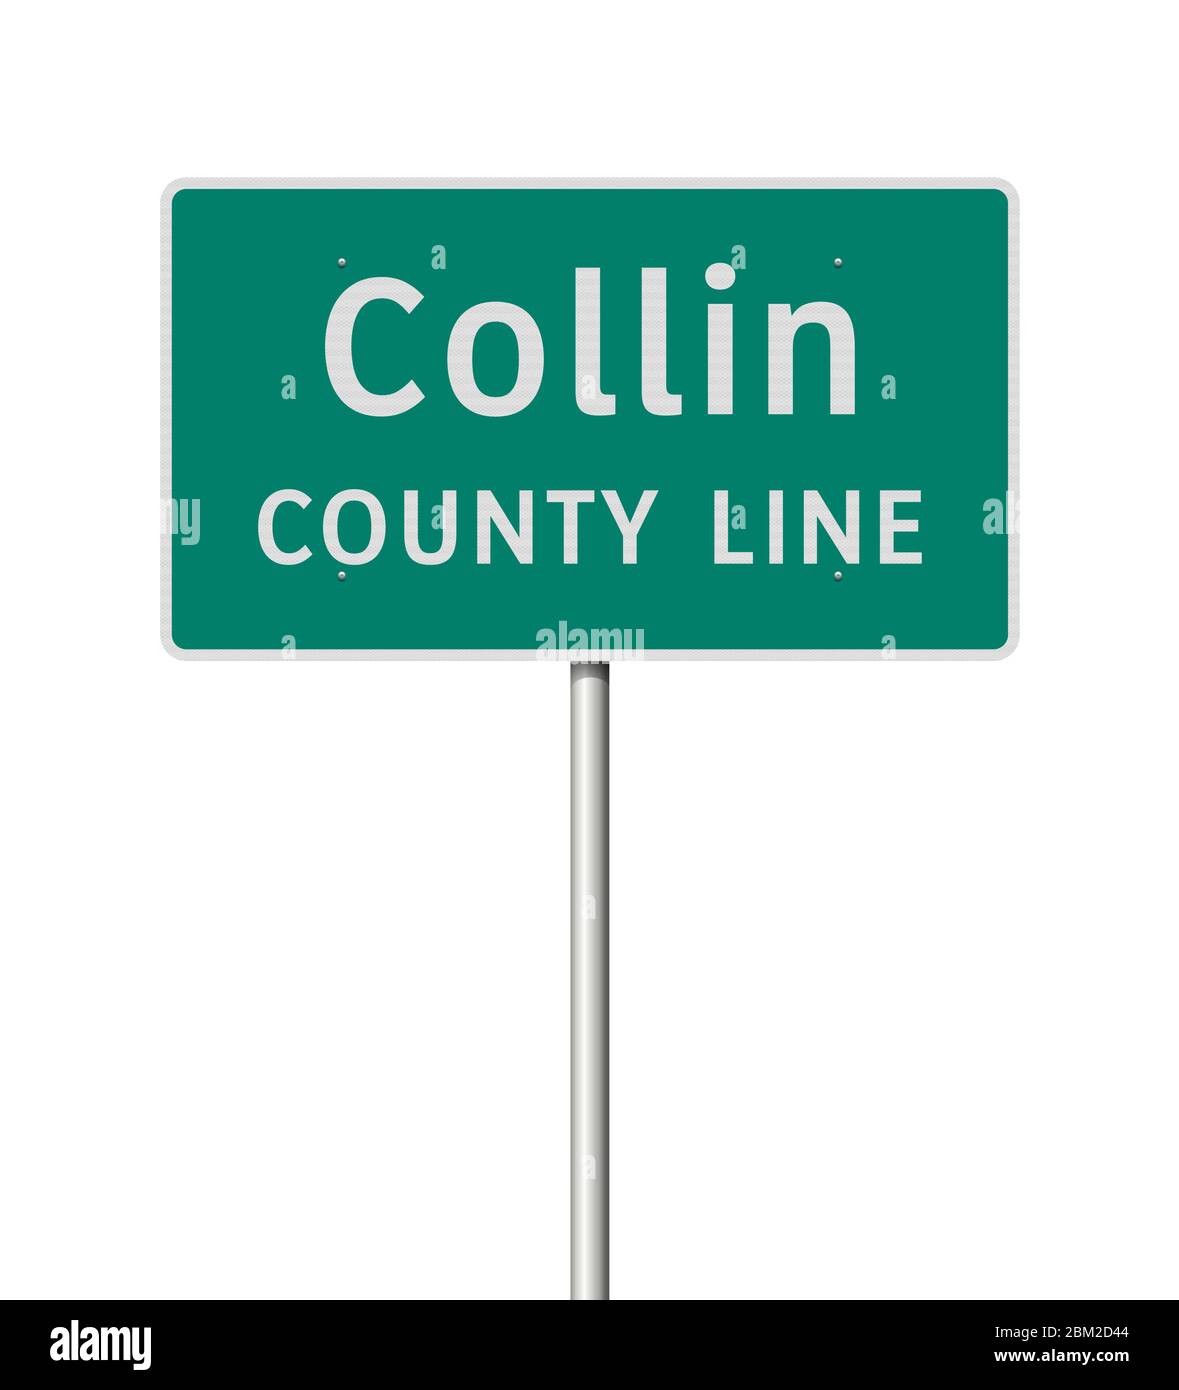 Vektorgrafik des eintretenden Collin County Straßenschild auf Metallmast Stock Vektor